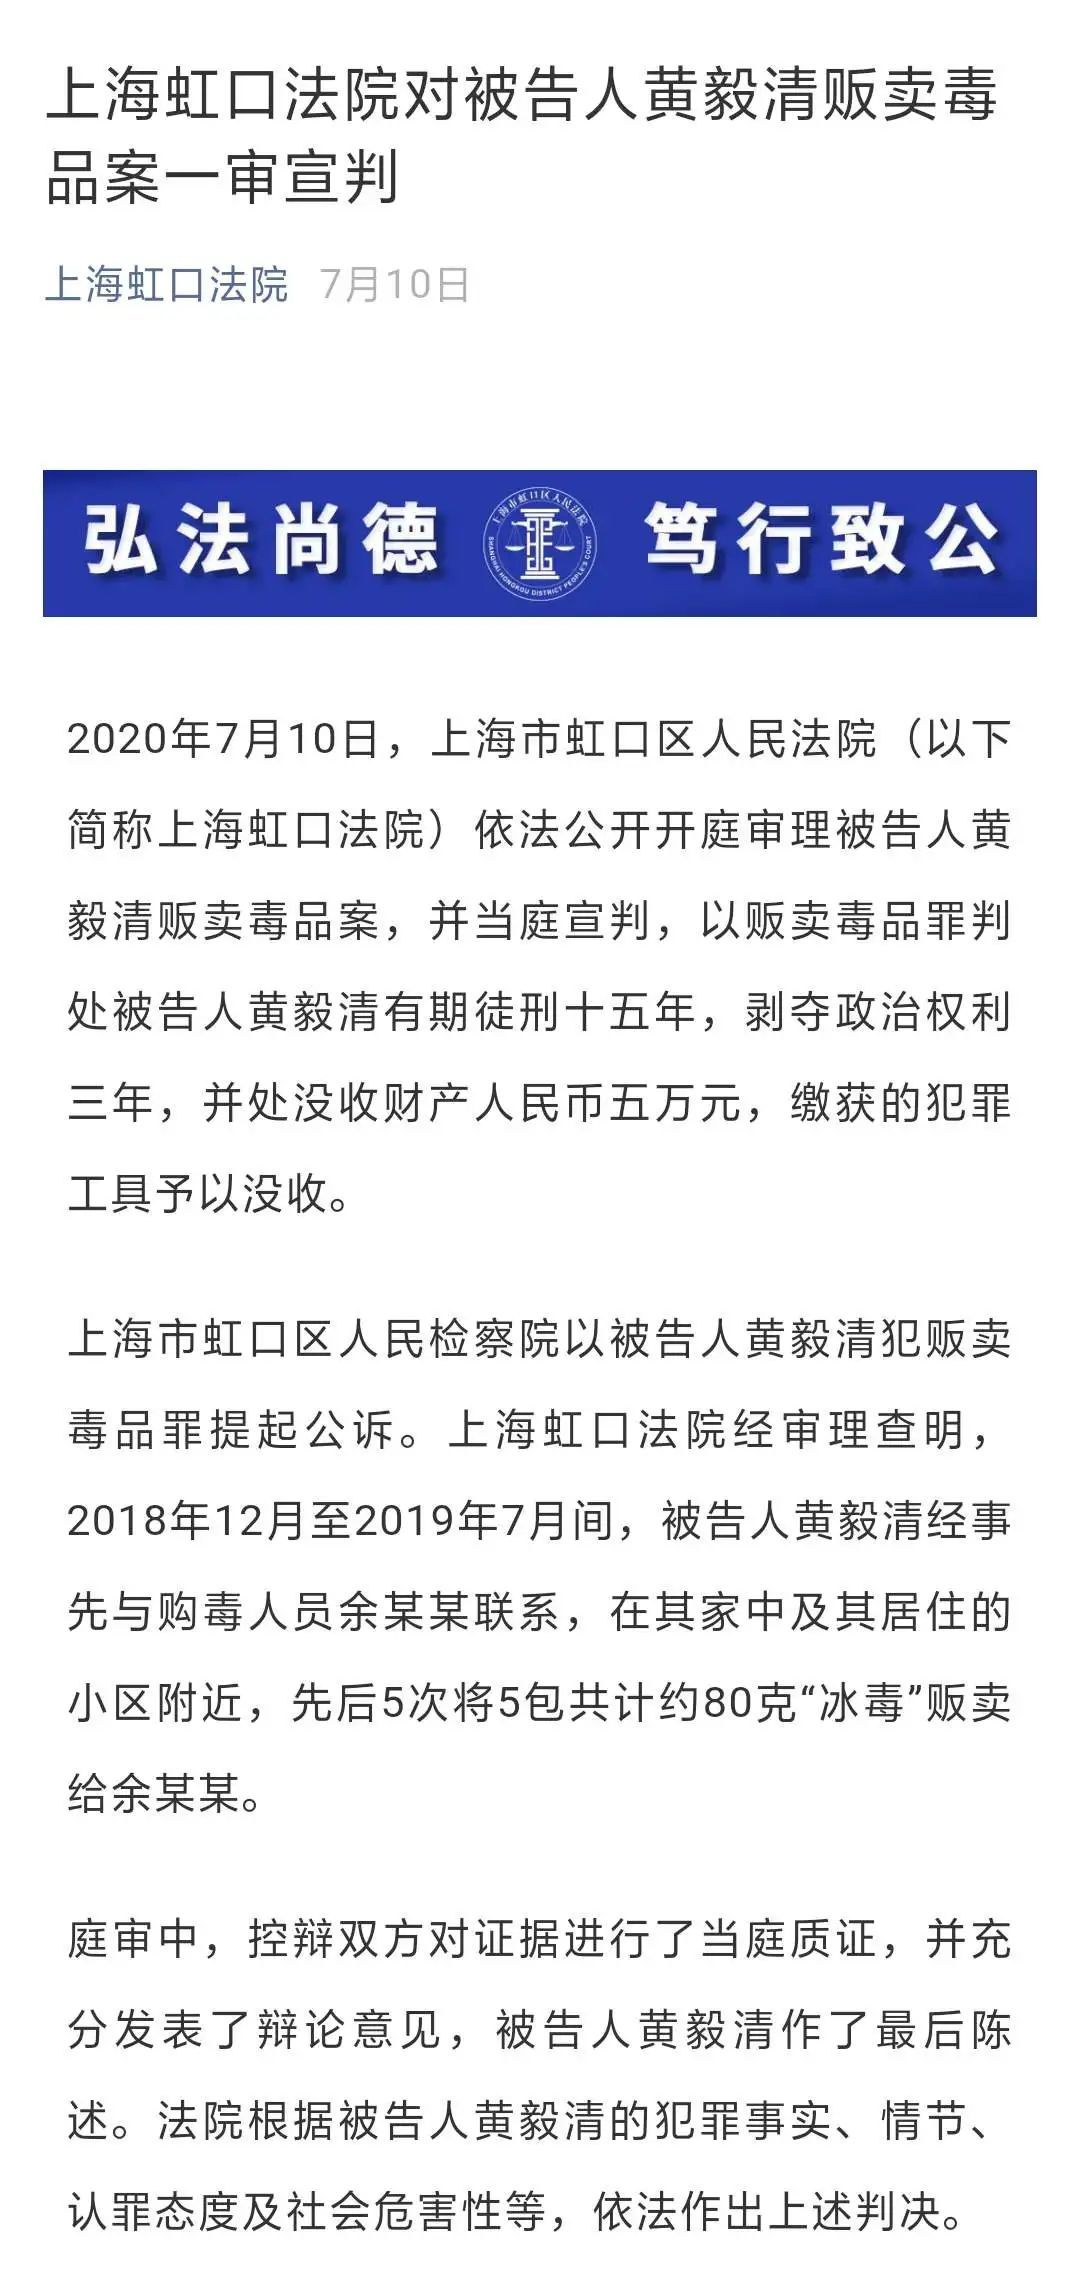 上海二中院受理黄奕前夫黄毅清贩卖毒品上诉一案